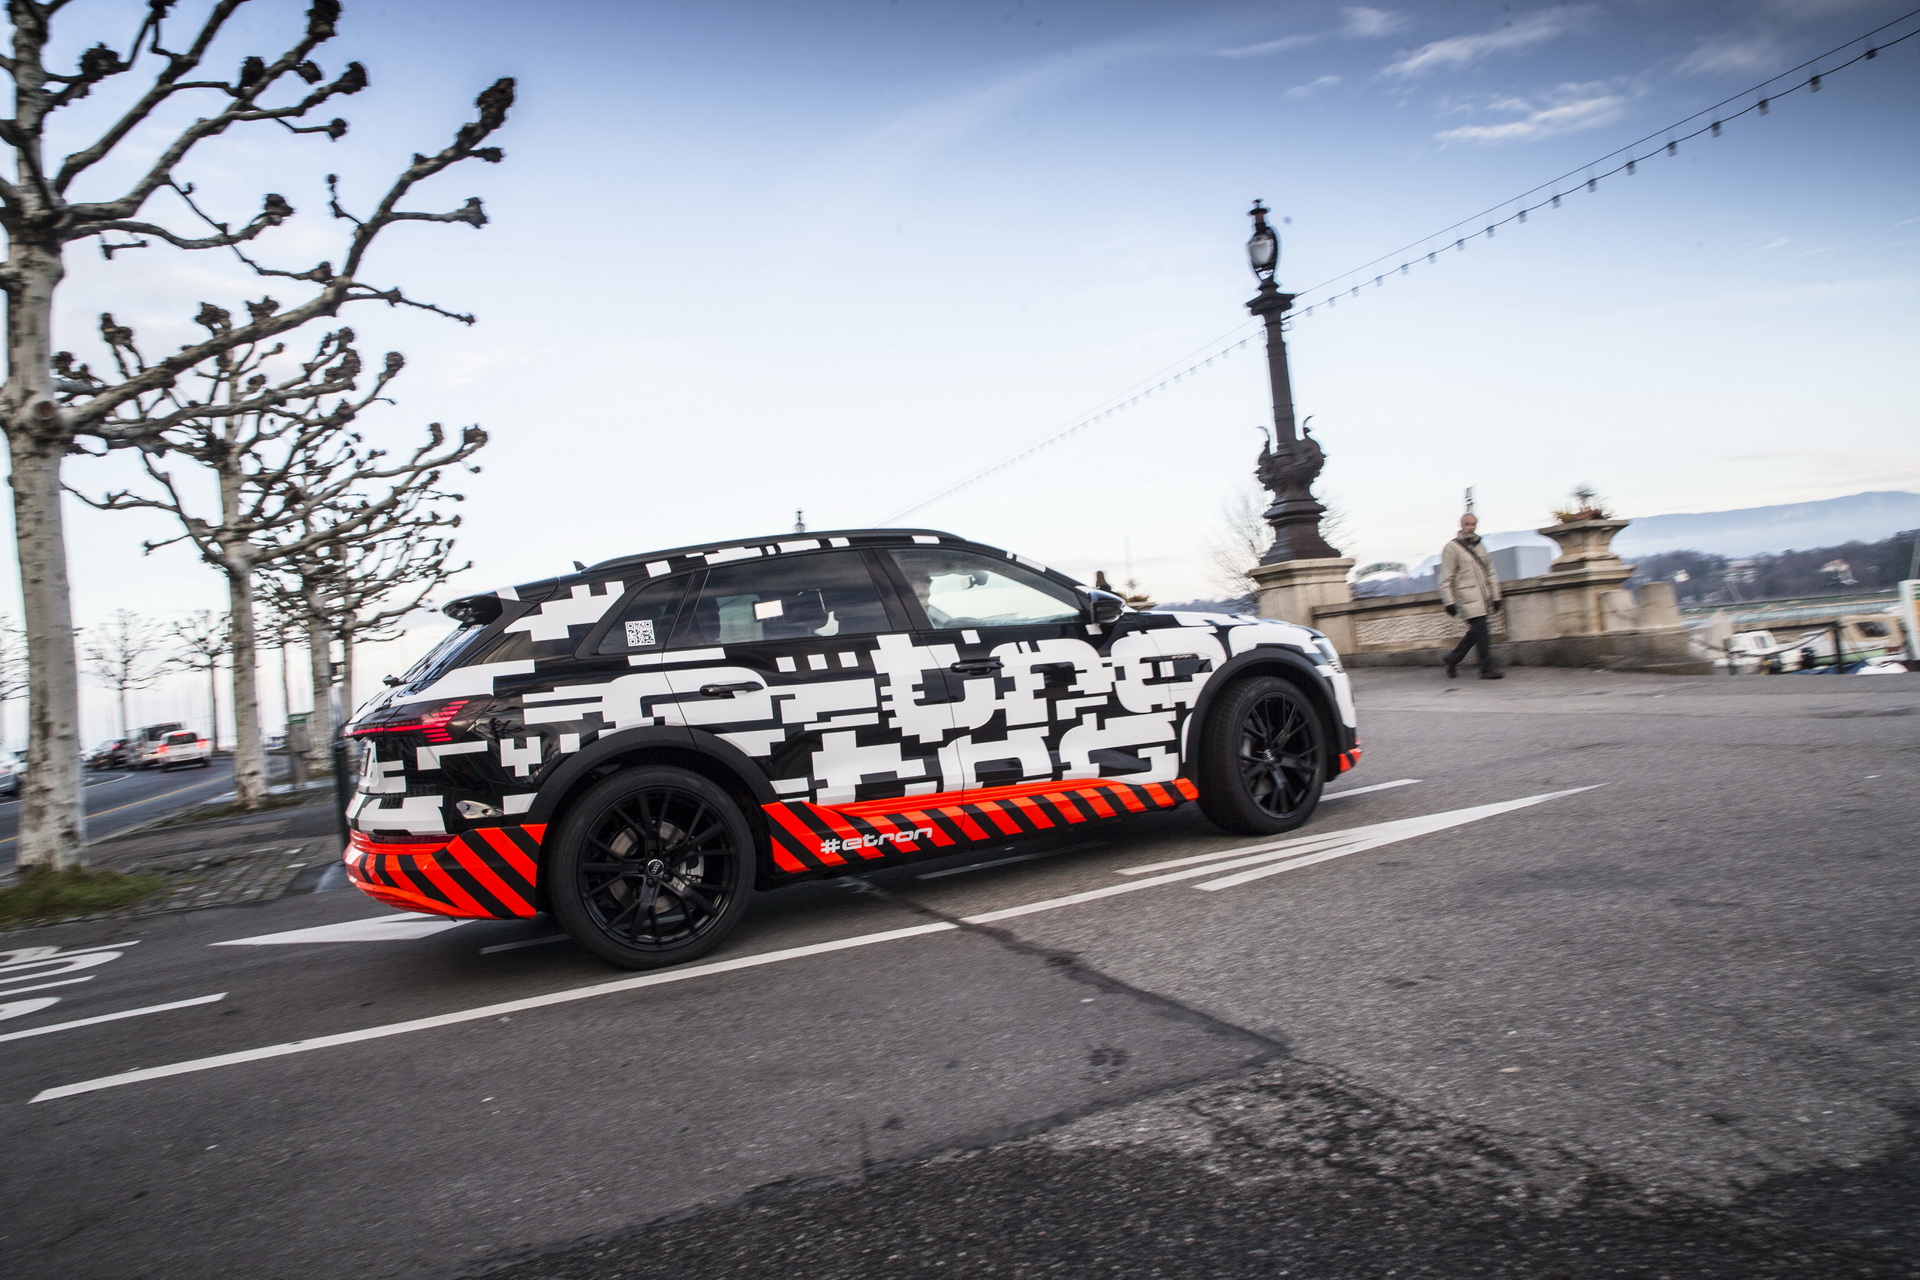 Audi e-tron – Czas na elektryfikację